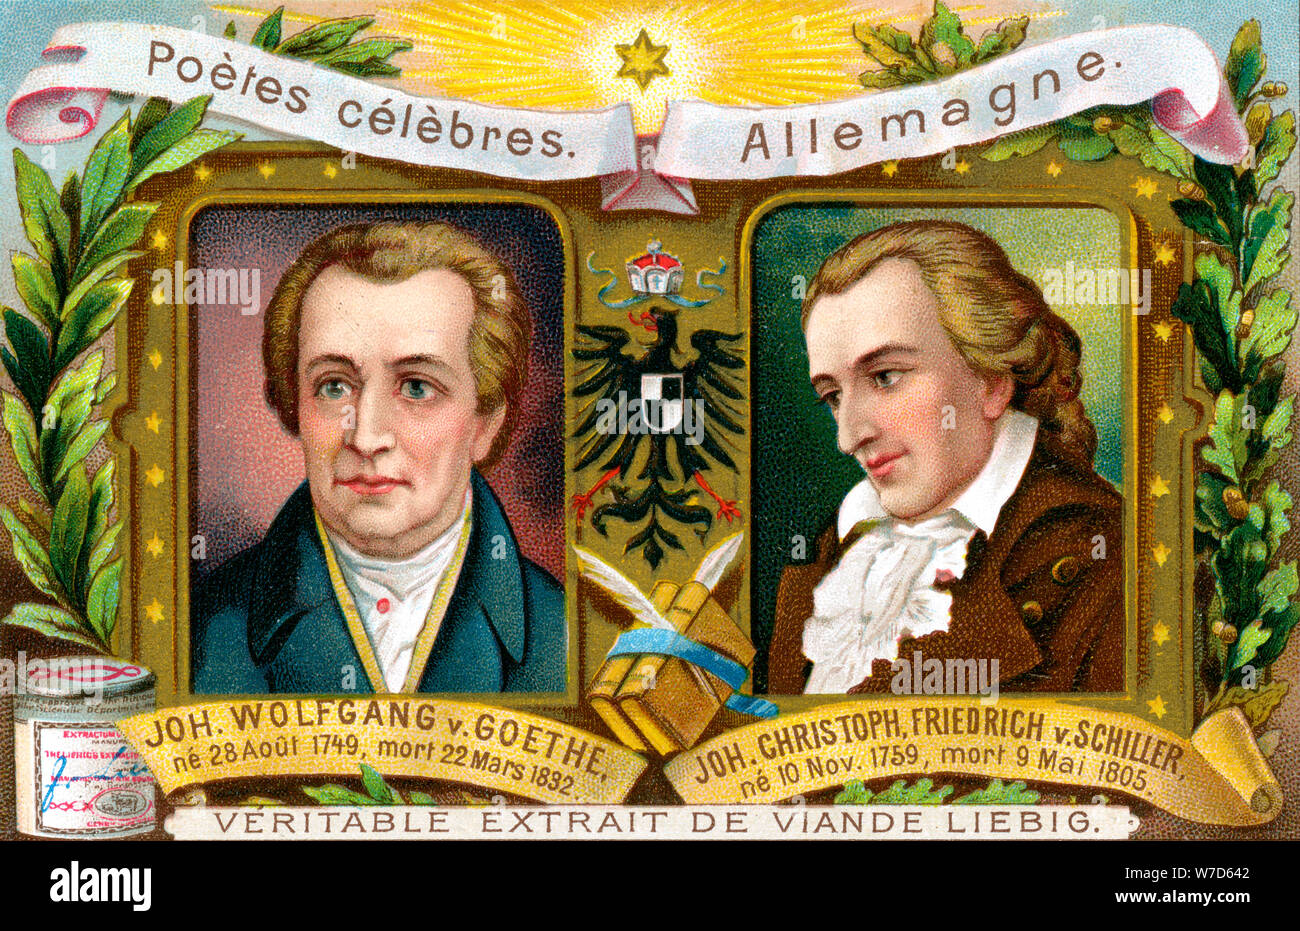 Johann Wolfgang von Goethe und Johann Christoph Friedrich von Schiller, c1900. Artist: Unbekannt Stockfoto